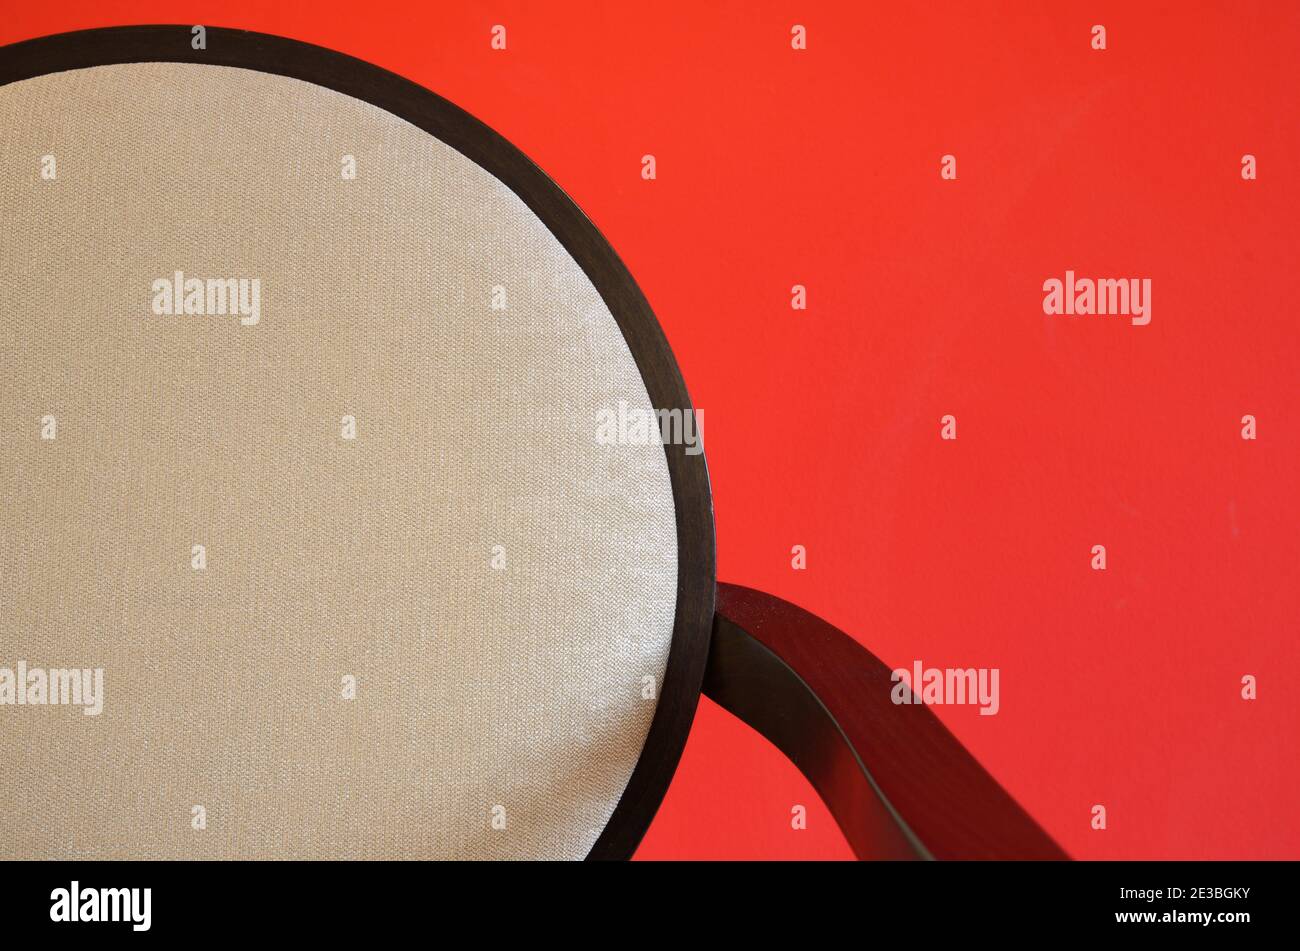 Détails minimalistes abstraits de la chaise moderne avec chaise ronde à l'arrière Photographié contre un mur rouge Banque D'Images